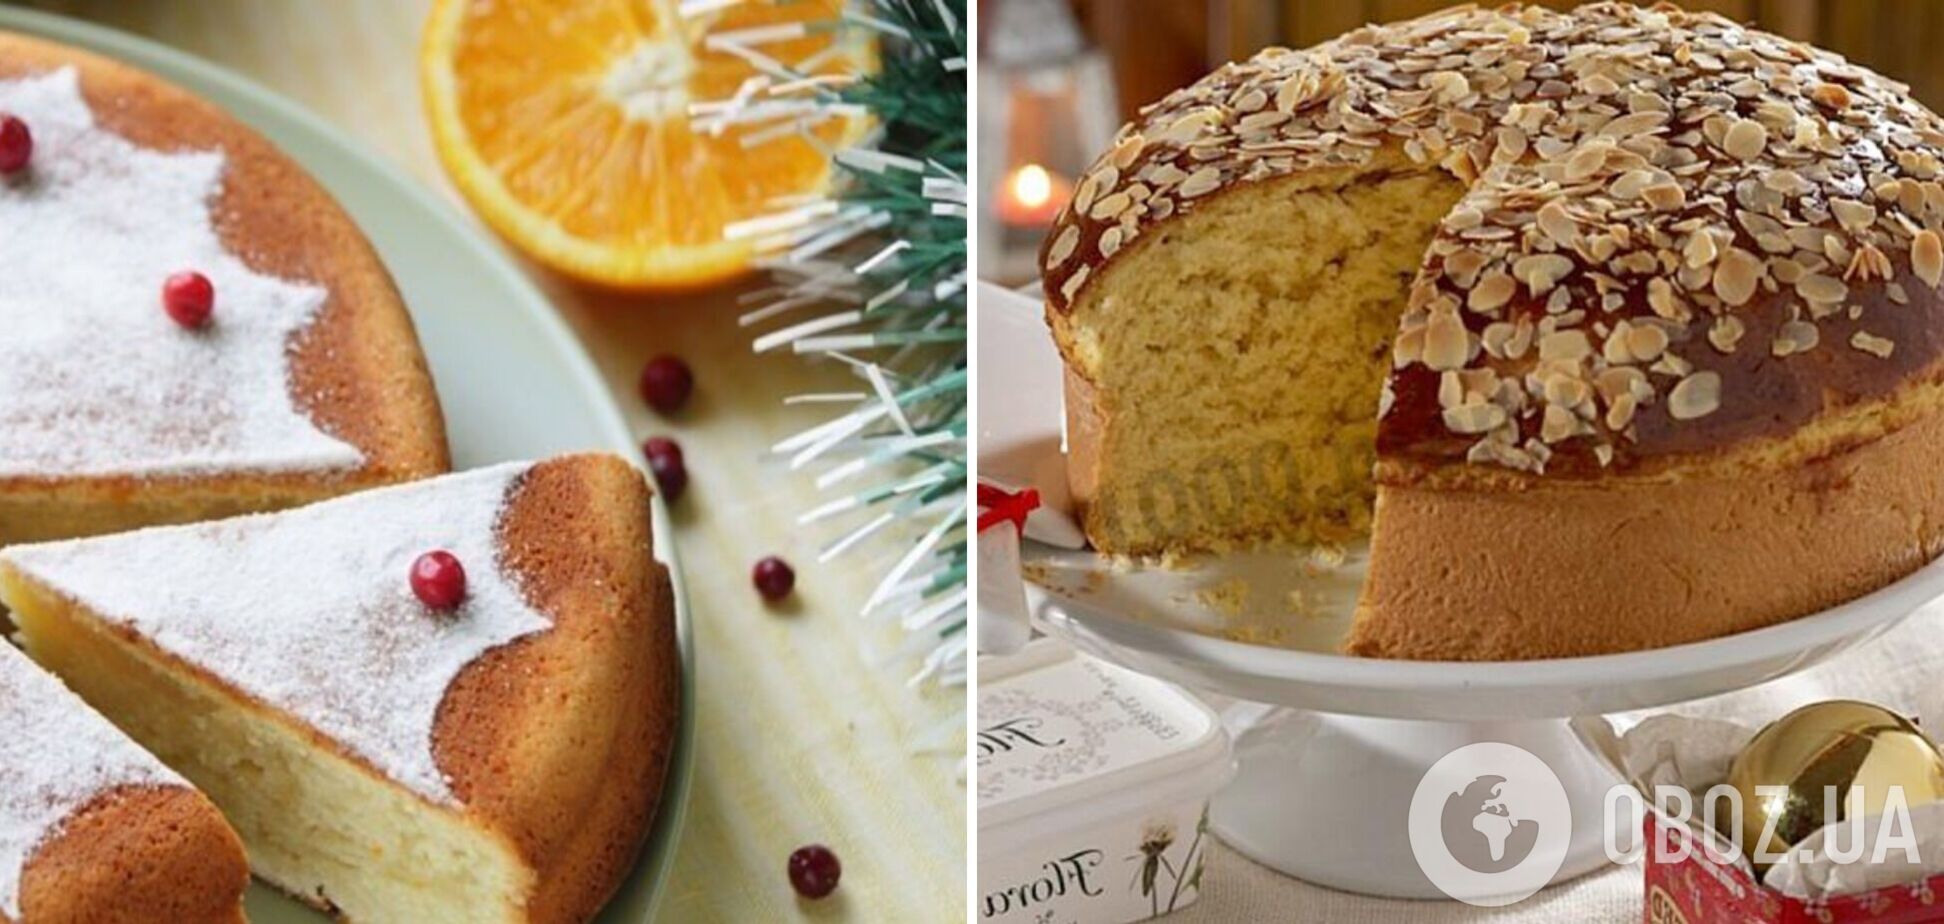 Греческий новогодний пирог 'Василопита': история блюда и удачный рецепт